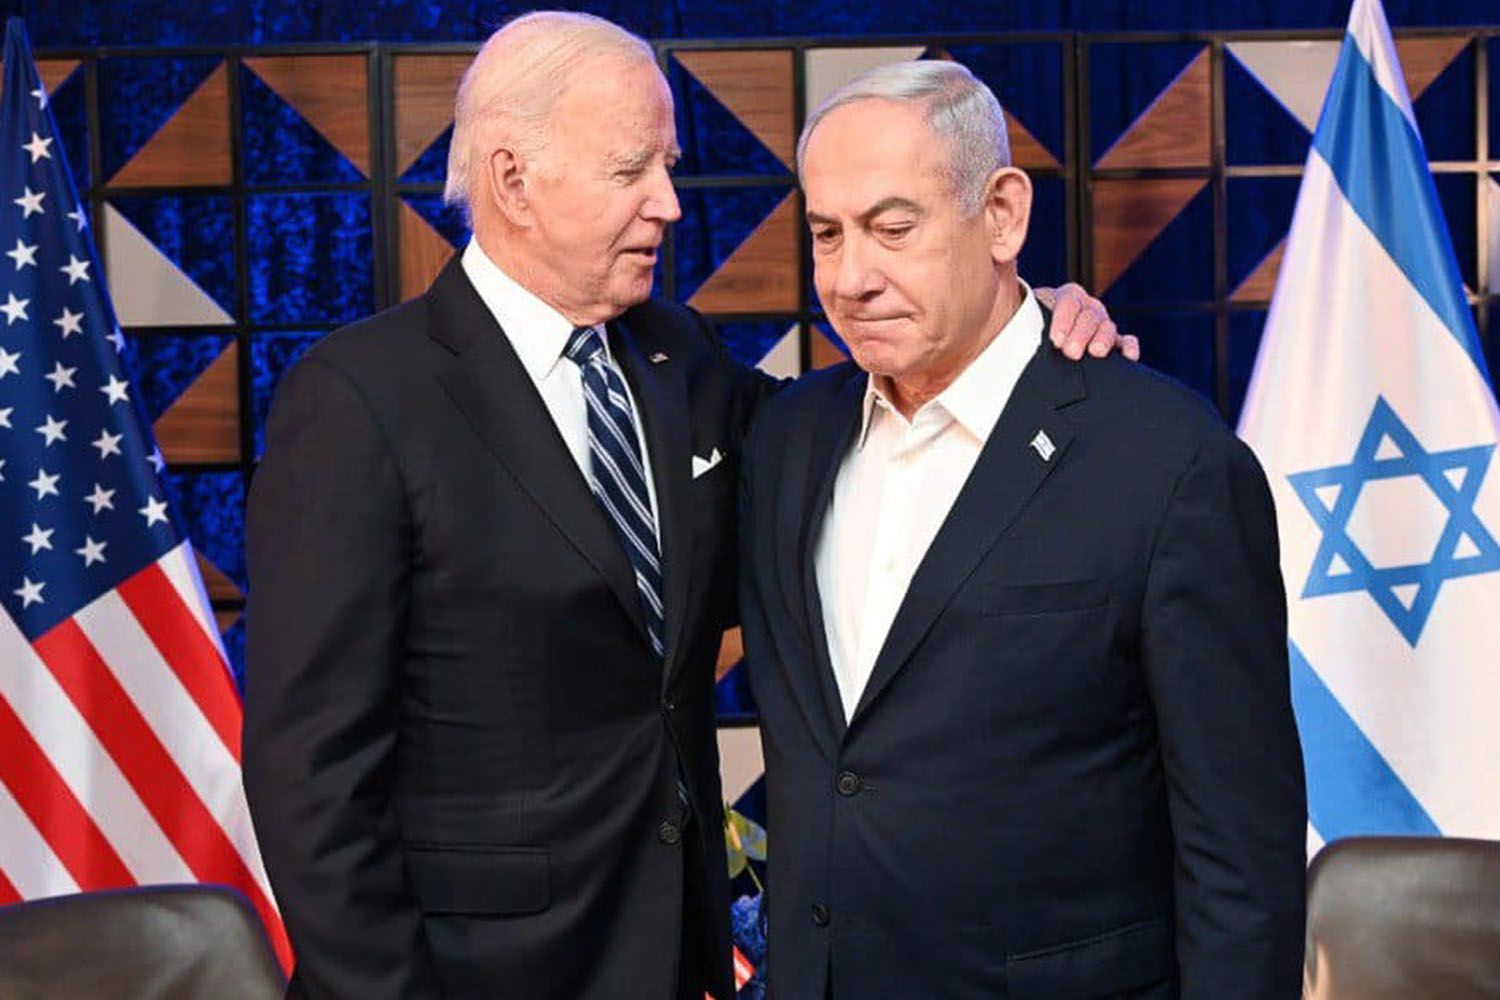 Le monstre israélien échappe à son créateur, les USA : il n’y aura jamais d’Etat palestinien, assène Netanyahu